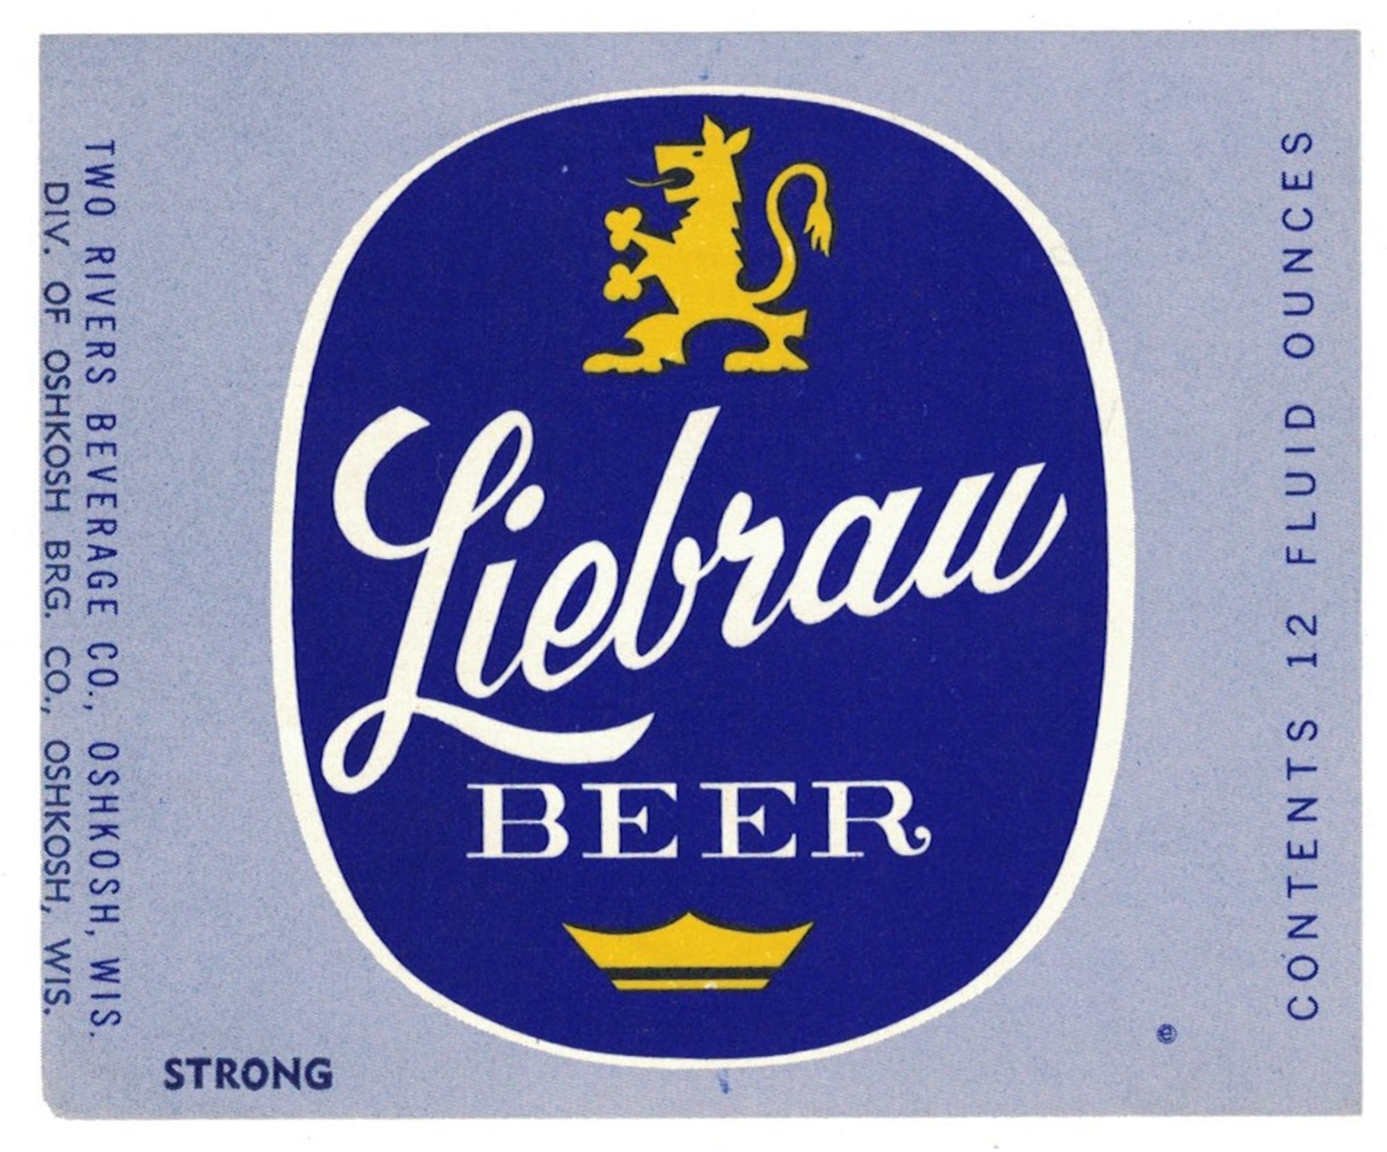 Liebrau Beer Label